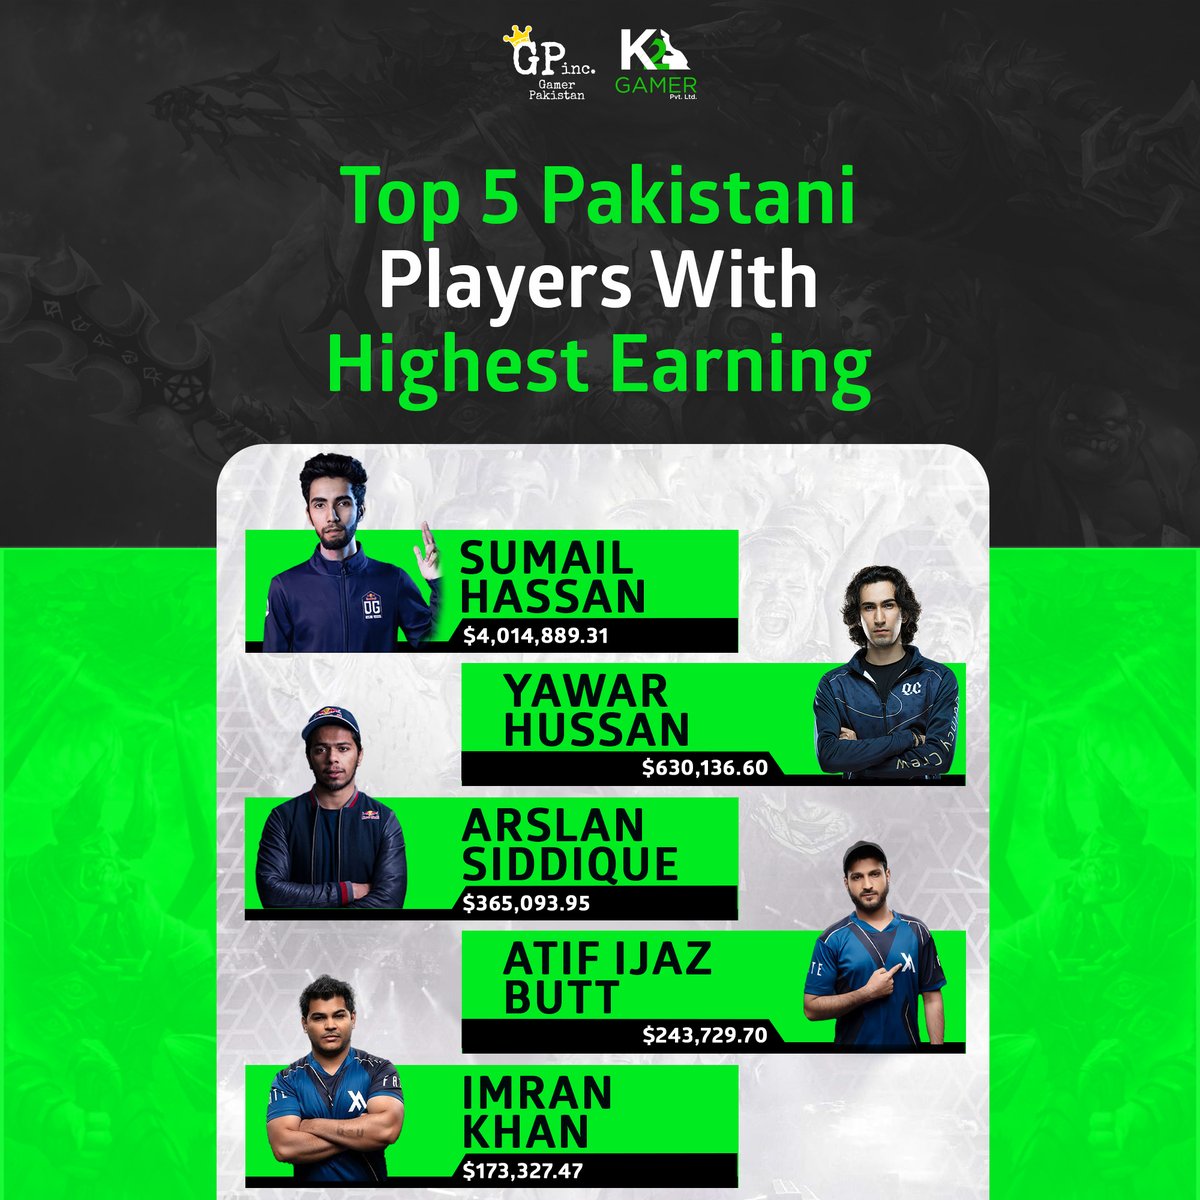 The earnings of Pakistan's top 5 esports players:

Sumail Hassan: $4,014,889.31
Yawar Hassan: $630,136.60
Arsalan Siddique: $365,093.95
Atif Ijaz Butt: $243,729.70
Imran Khan: $173,327.47